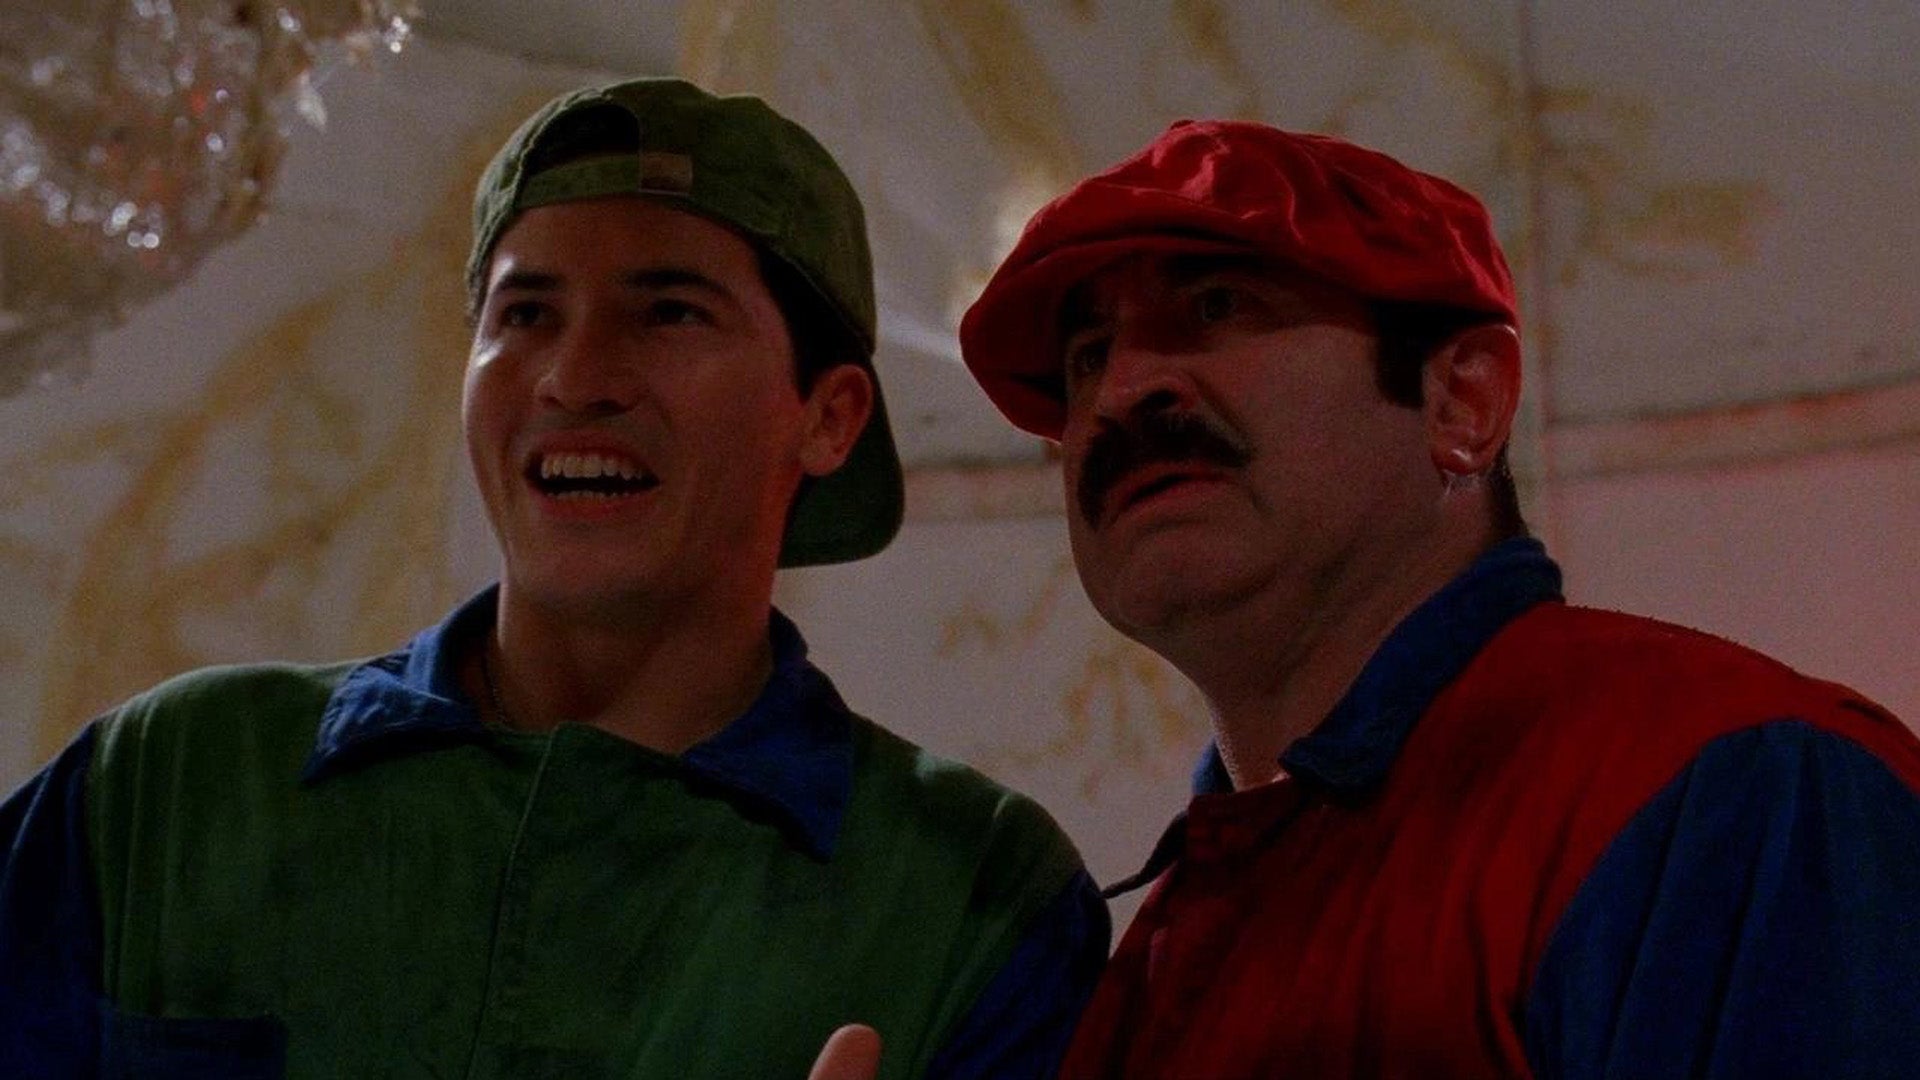 Luigi dari film Super Mario Bros asli menganggap casting film animasi telah “mundur”